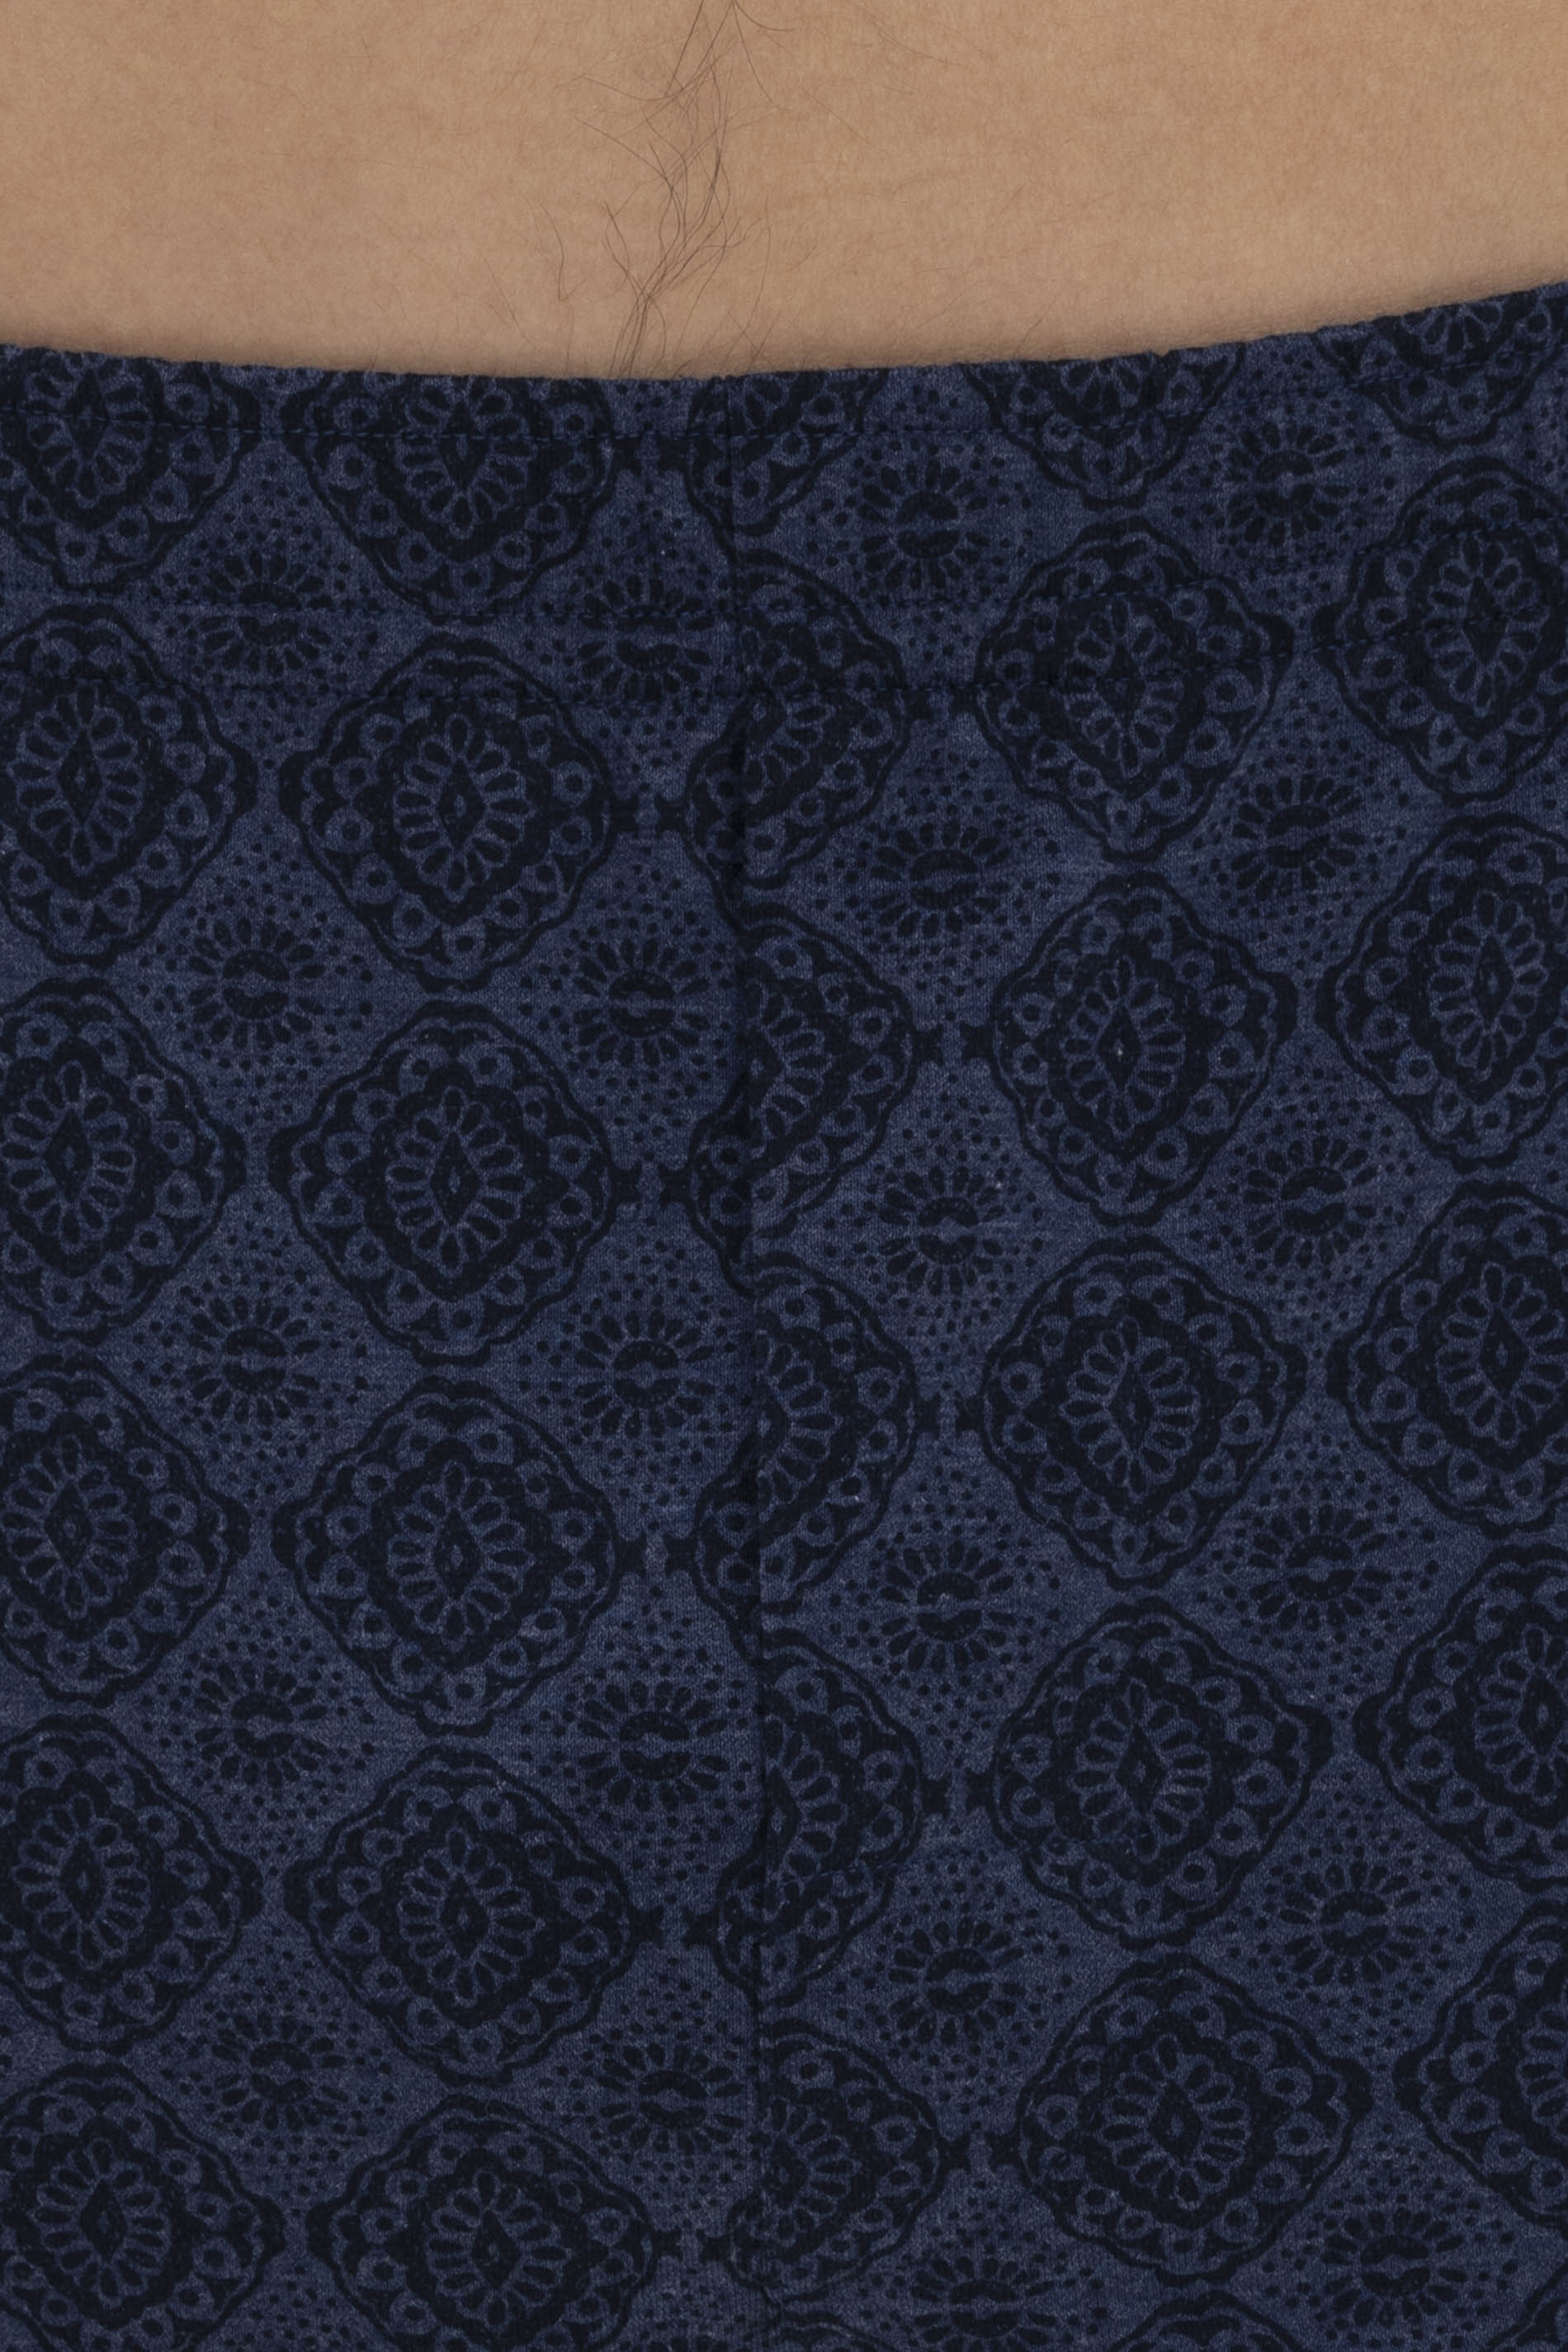 Long bottoms Denim Blue Serie Ikat Detail View 01 | mey®